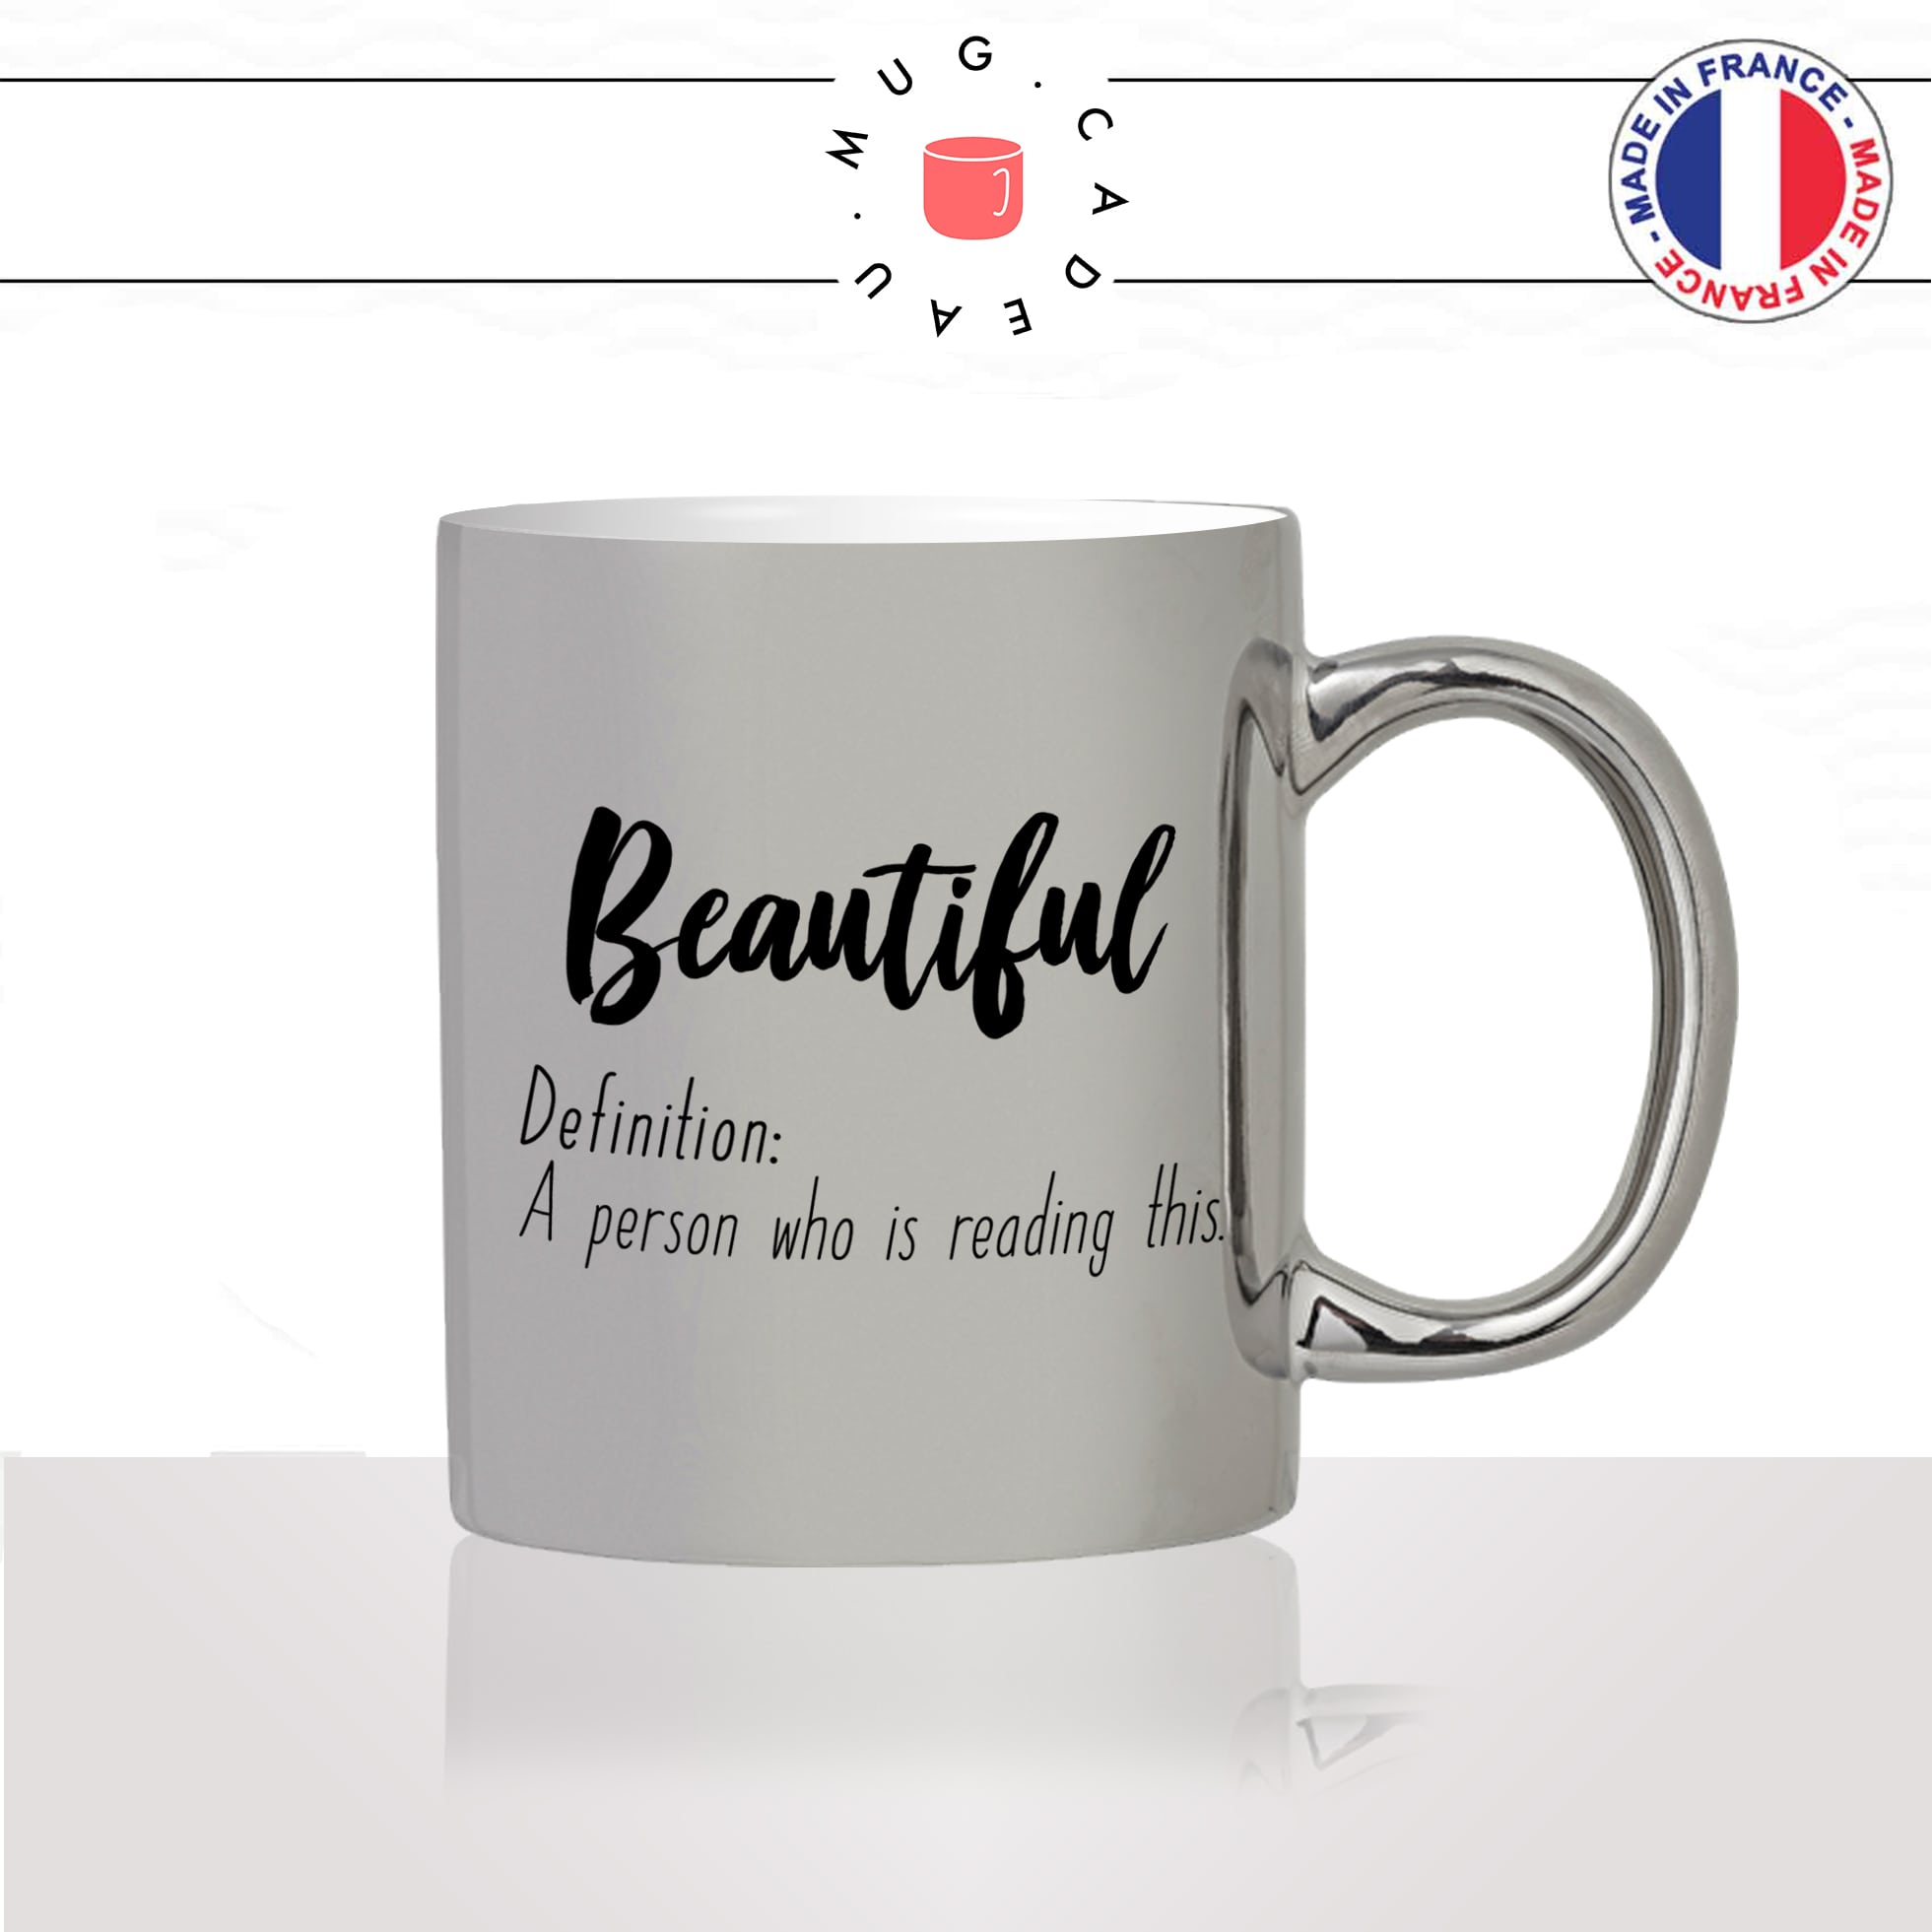 mug-tasse-argent-argenté-silver-beautiful-belle-anglais-jolie-femme-copine-collegue-humour-idée-cadeau-fun-cool-café-thé-original2-min